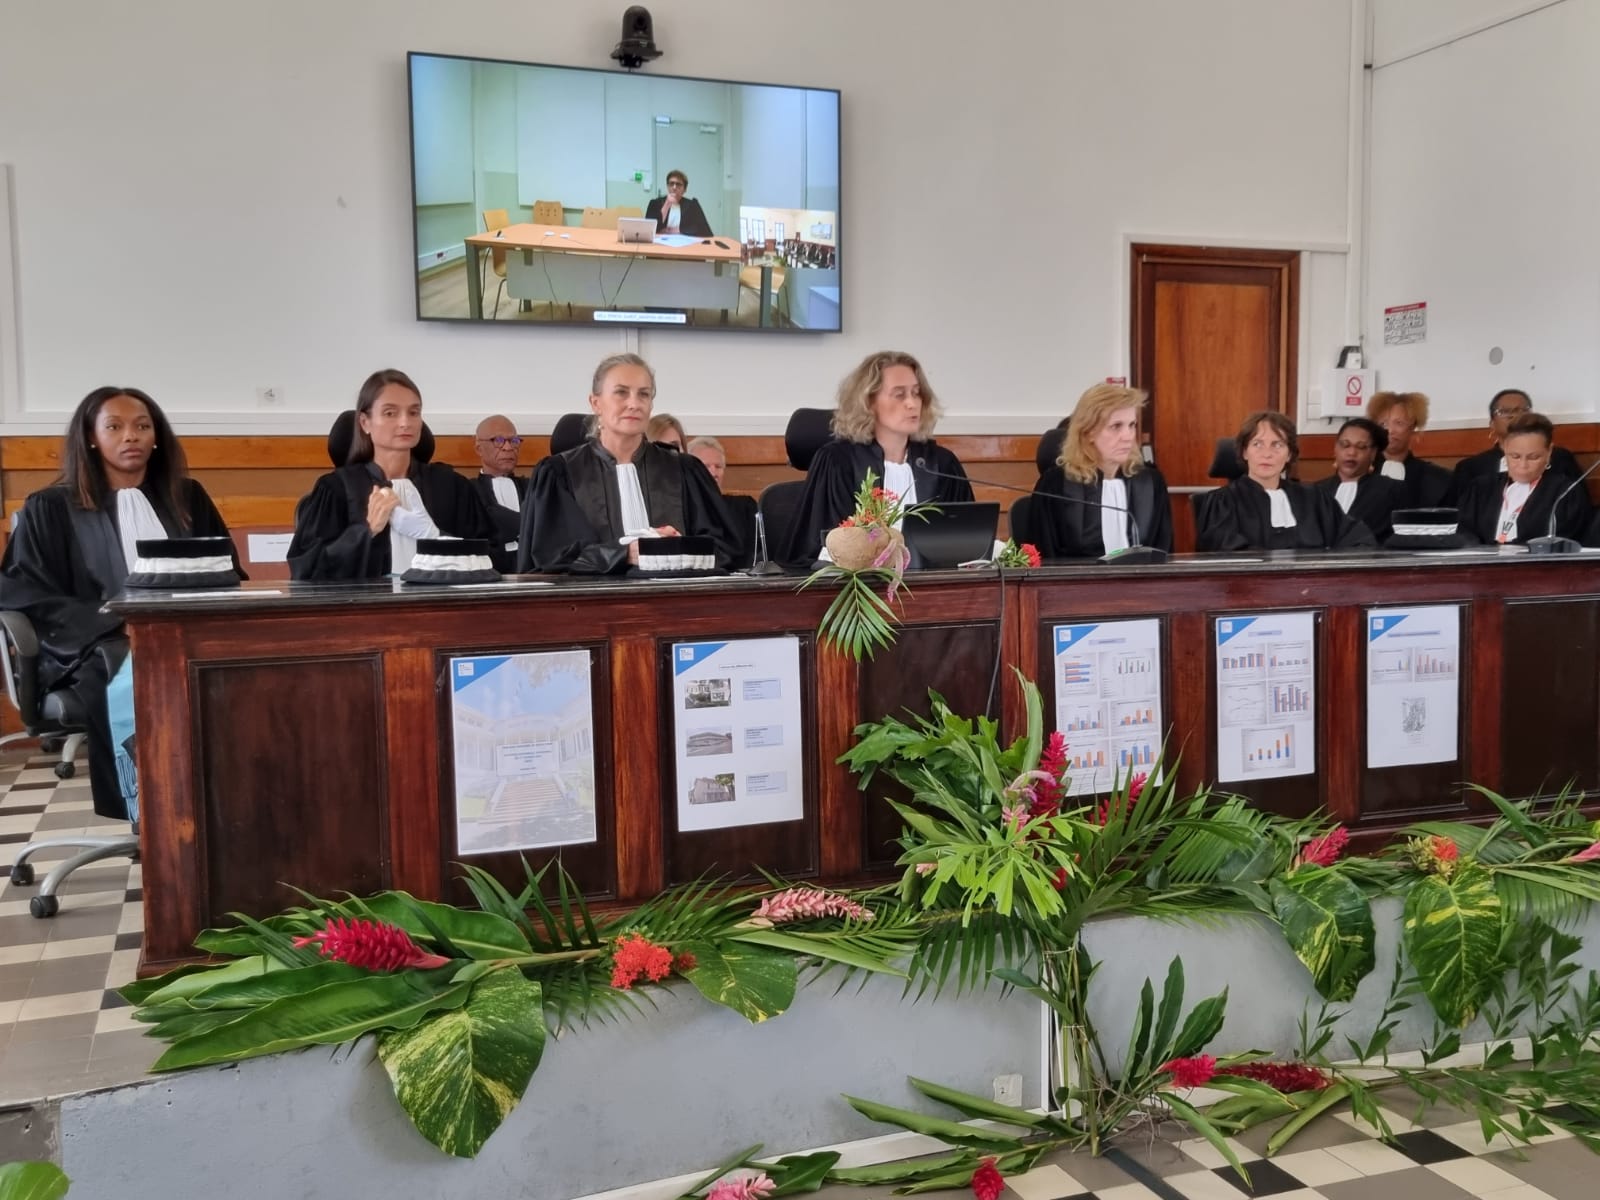     Au tribunal judiciaire de Basse-Terre, la montée de la violence armée inquiète

